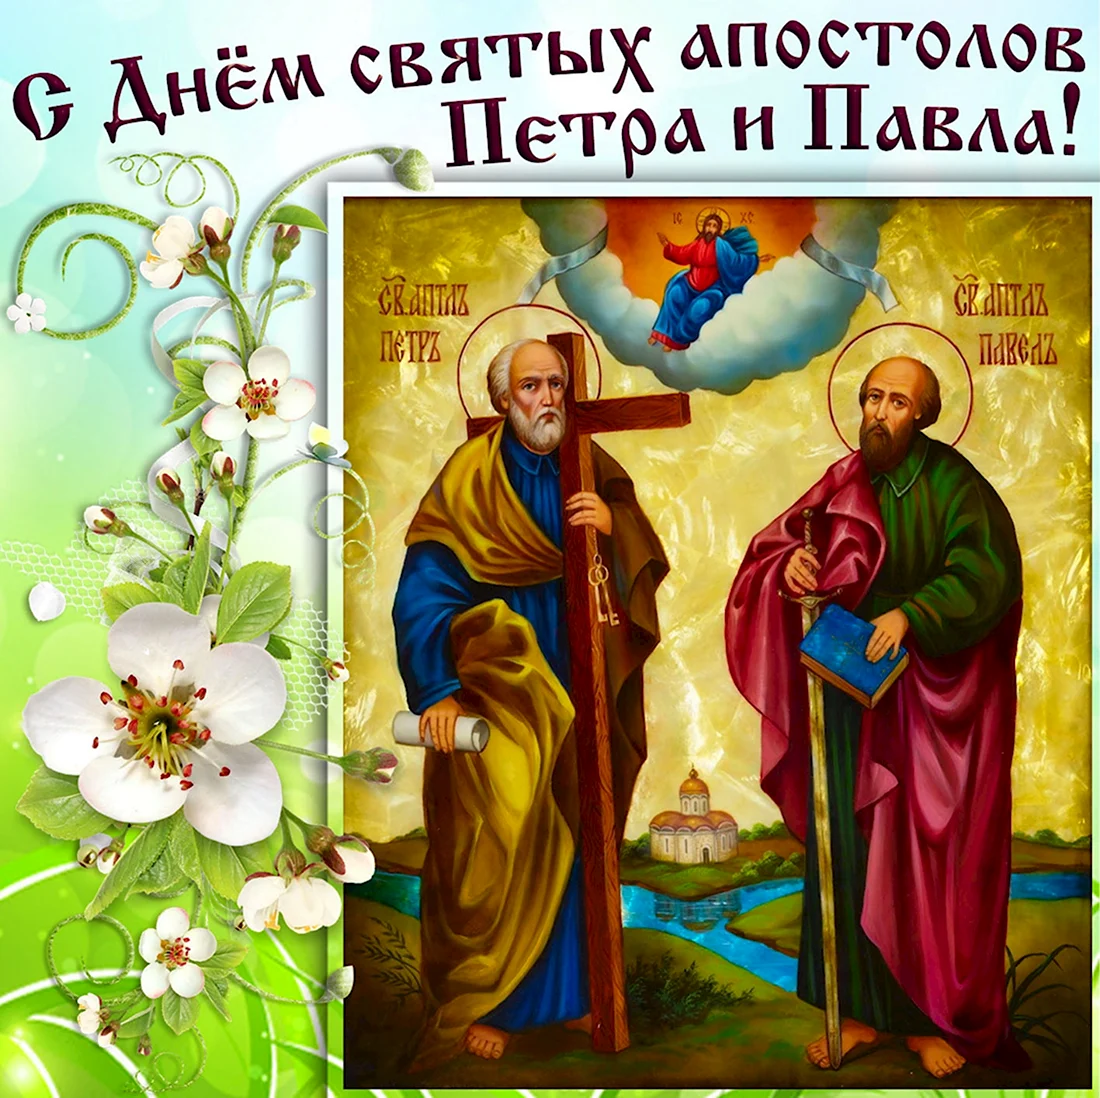 12 Июля день святых апостолов Петра и Павла. Открытка, картинка с поздравлением, с праздником